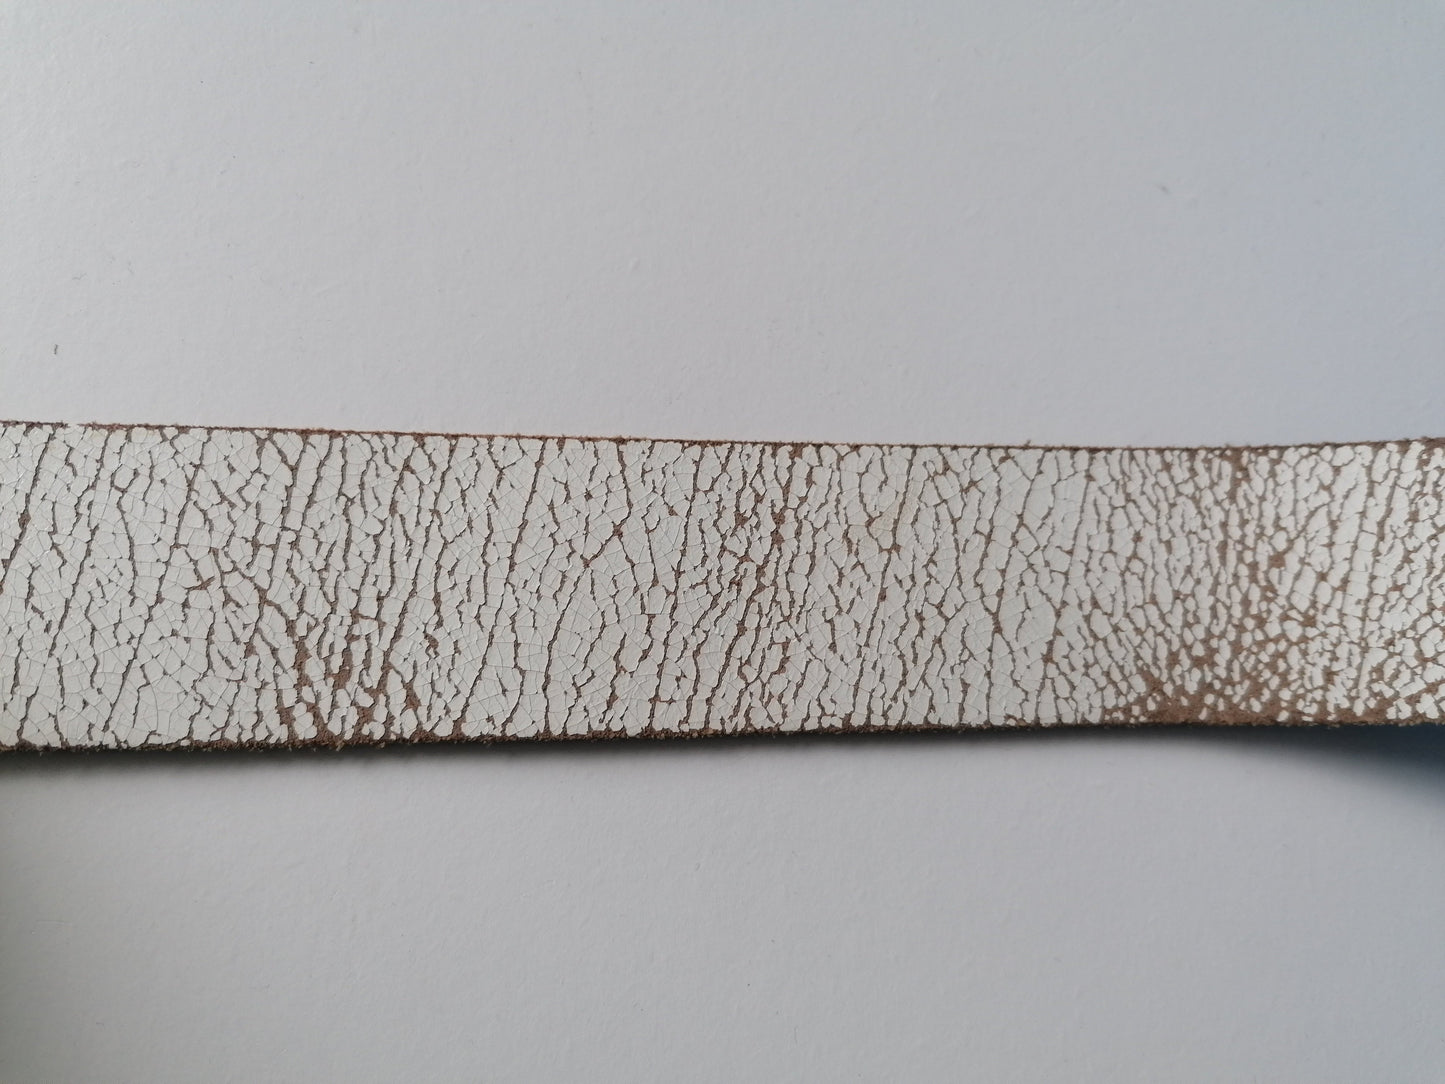 Cinturón de cuero con hebilla. Color blanco marrón. 95 - 110 cm.